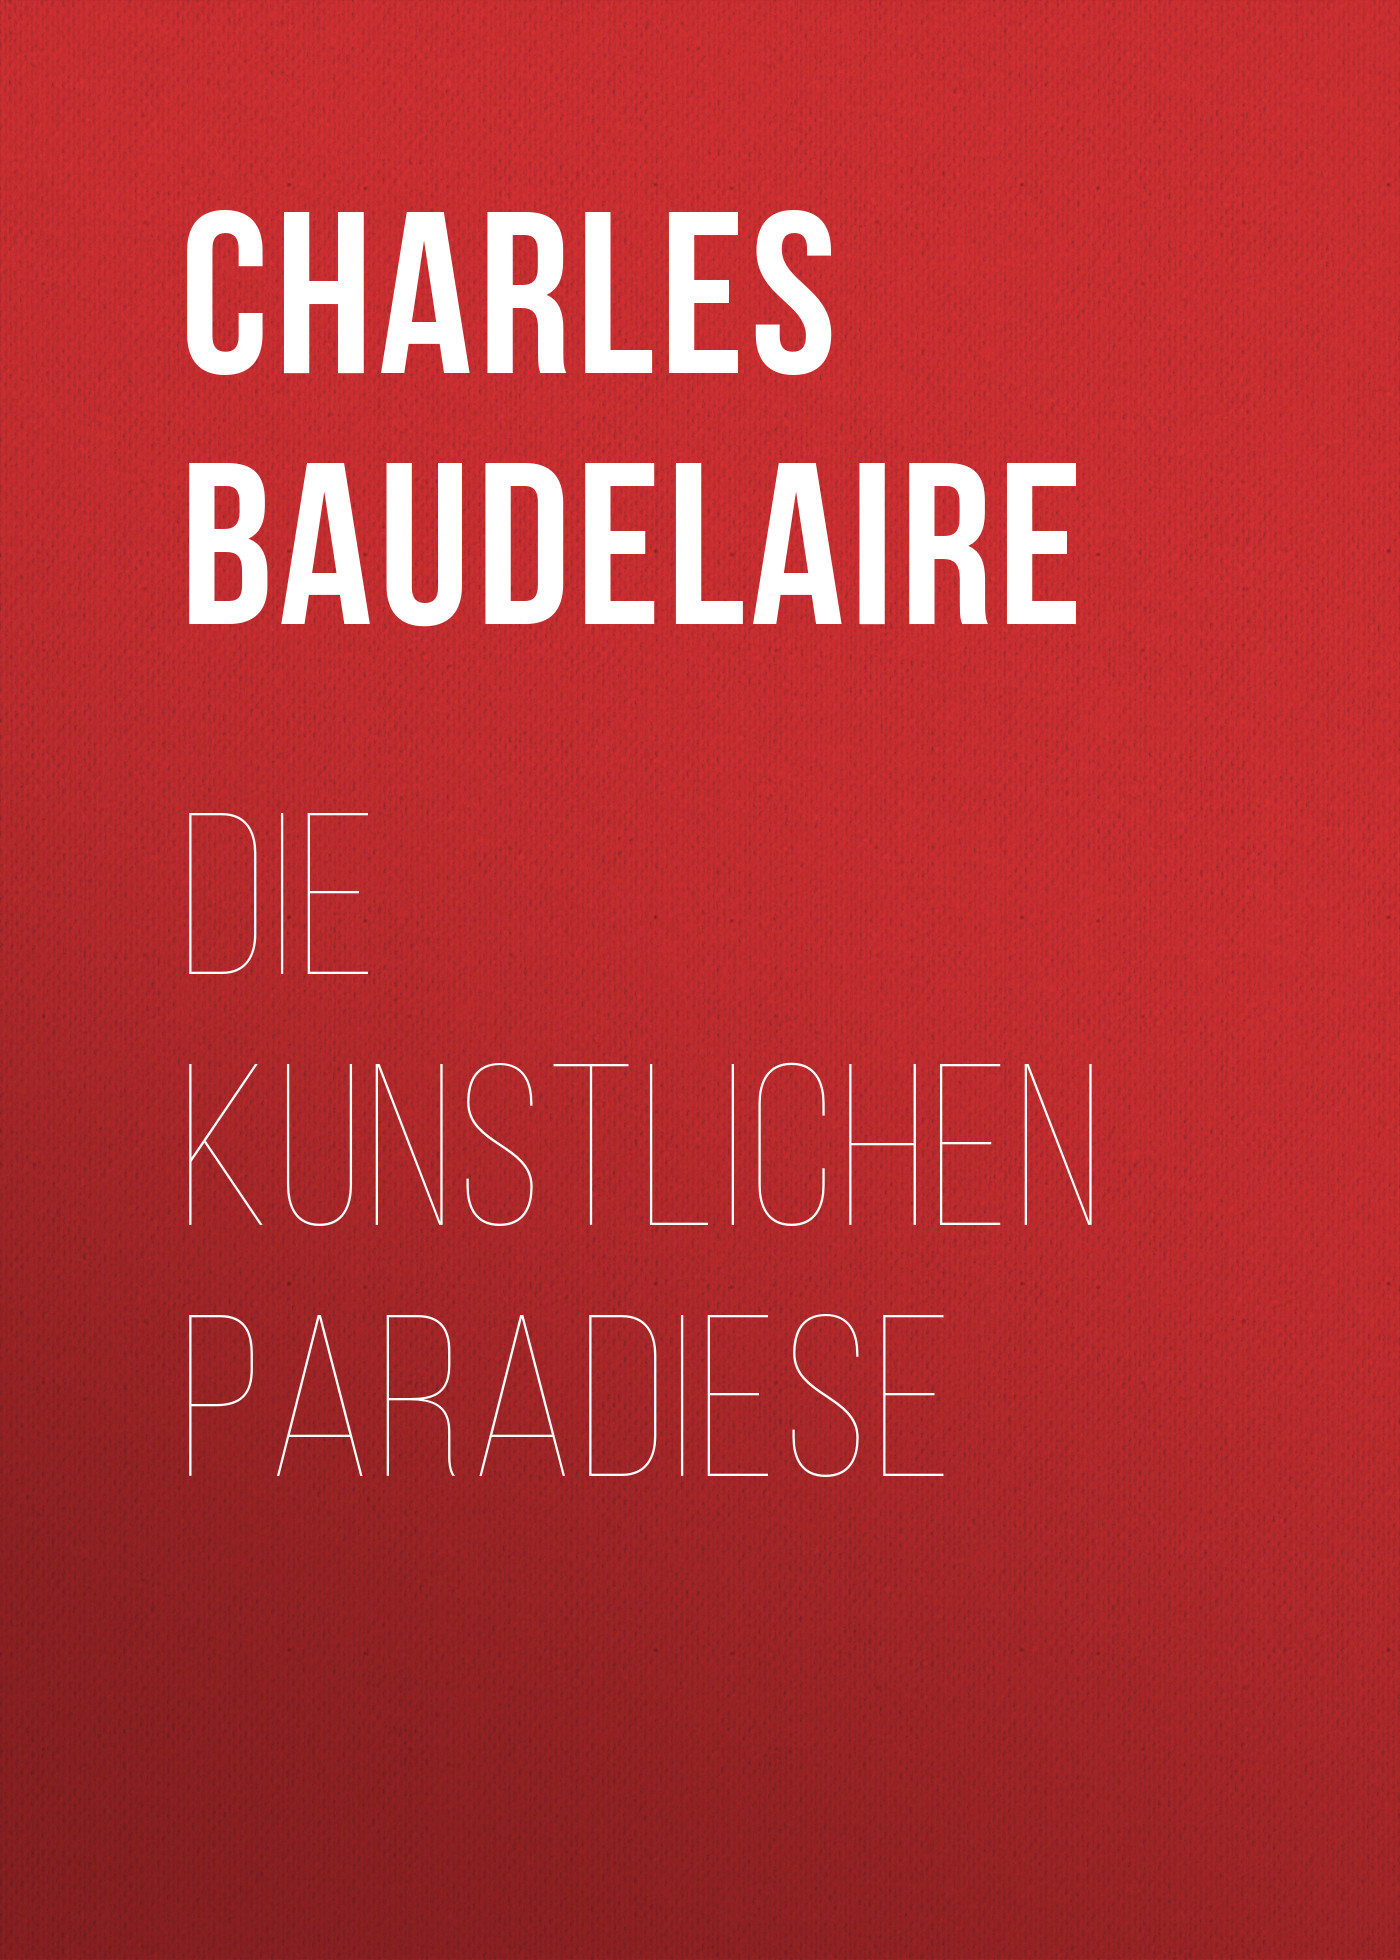 Книга Die kunstlichen Paradiese из серии , созданная Charles Baudelaire, может относится к жанру Зарубежная классика. Стоимость электронной книги Die kunstlichen Paradiese с идентификатором 48633108 составляет 0 руб.